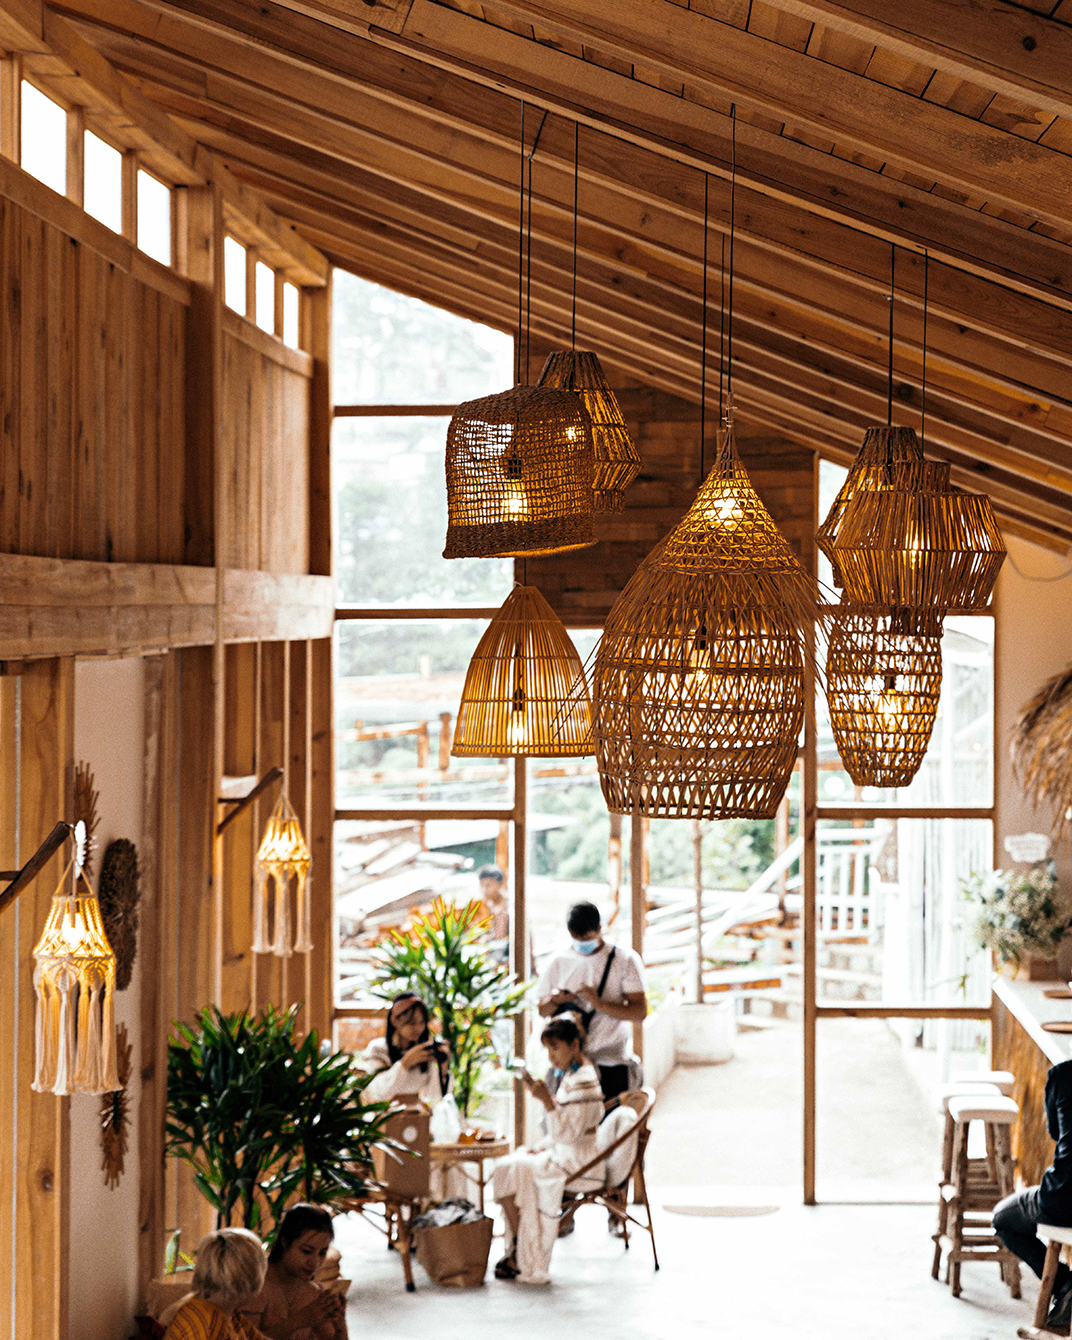 自然的乡村风格作为主题空间酒吧 越南 深圳 上海 北京 广州 武汉 咖啡店 餐饮商业 logo设计 vi设计 空间设计